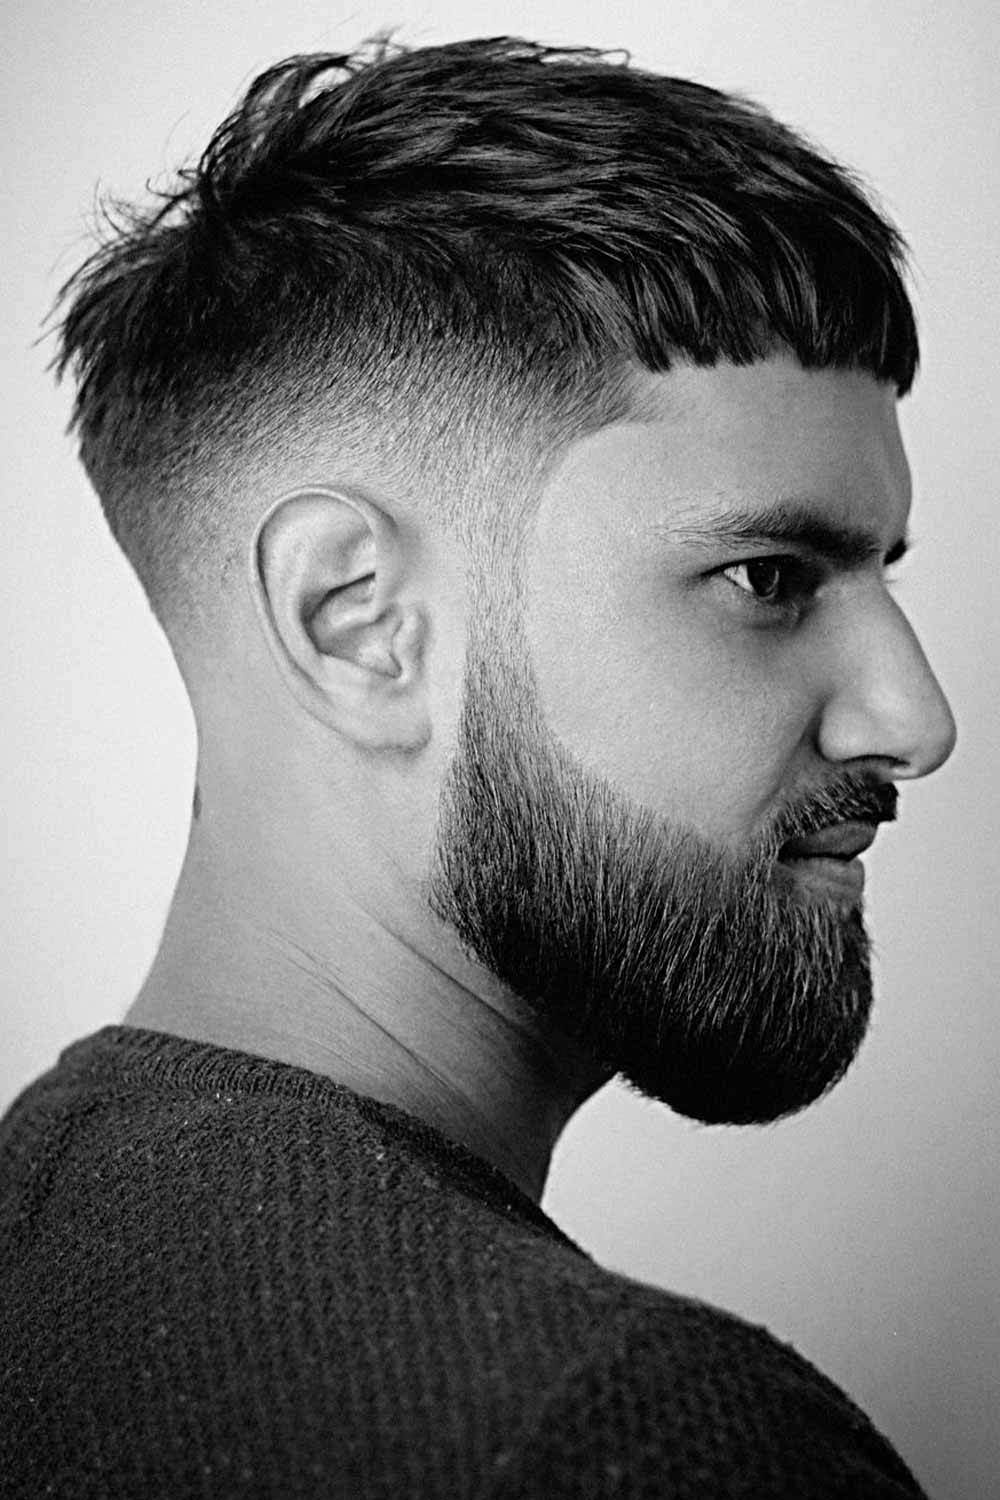 35+ Mid Fade Haircuts To Rock This Year | MensHaircuts.com